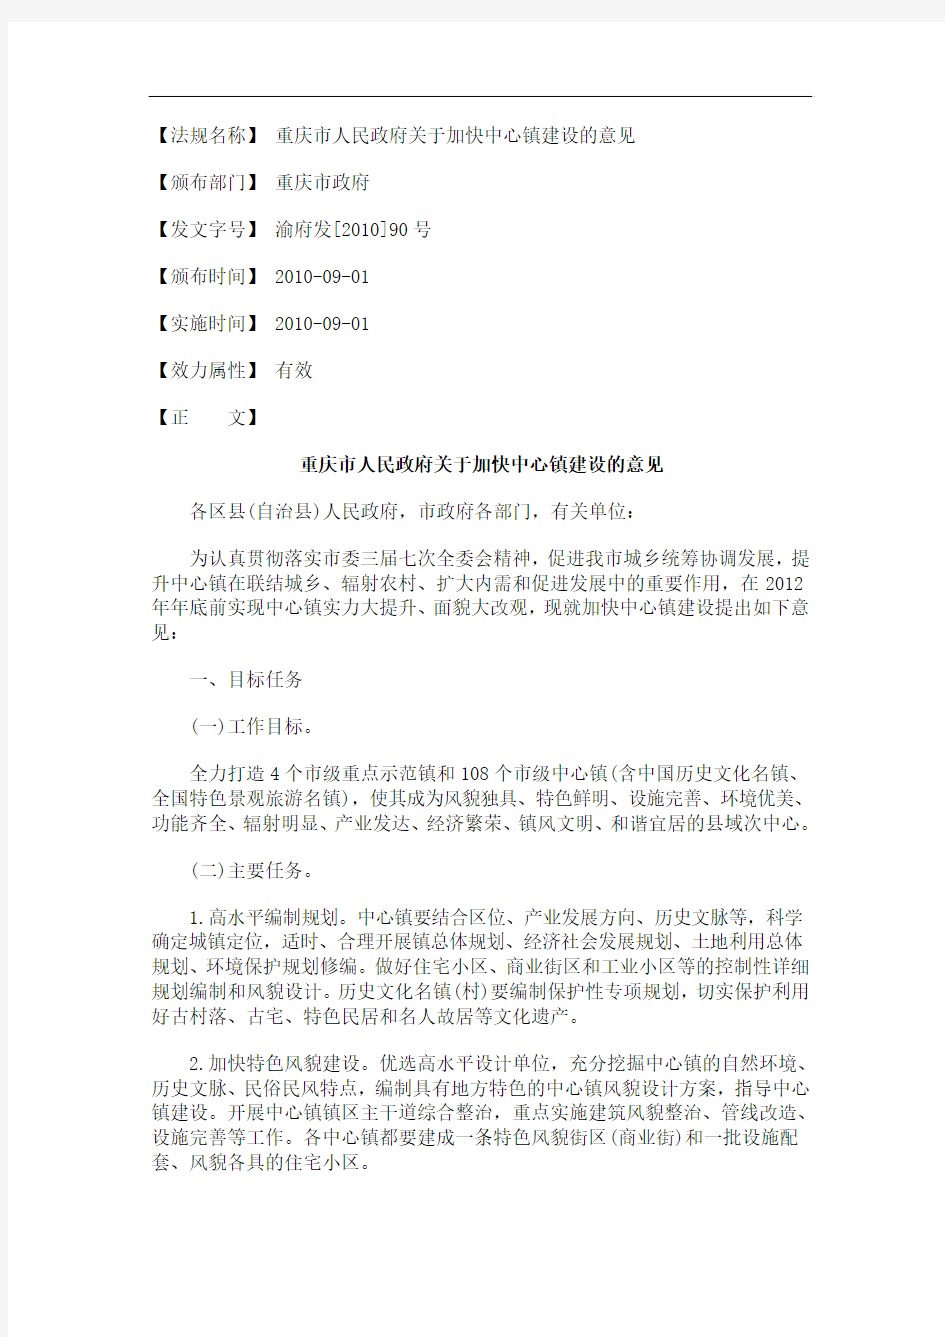 的意见重庆市人民政府关于加快中心镇建设